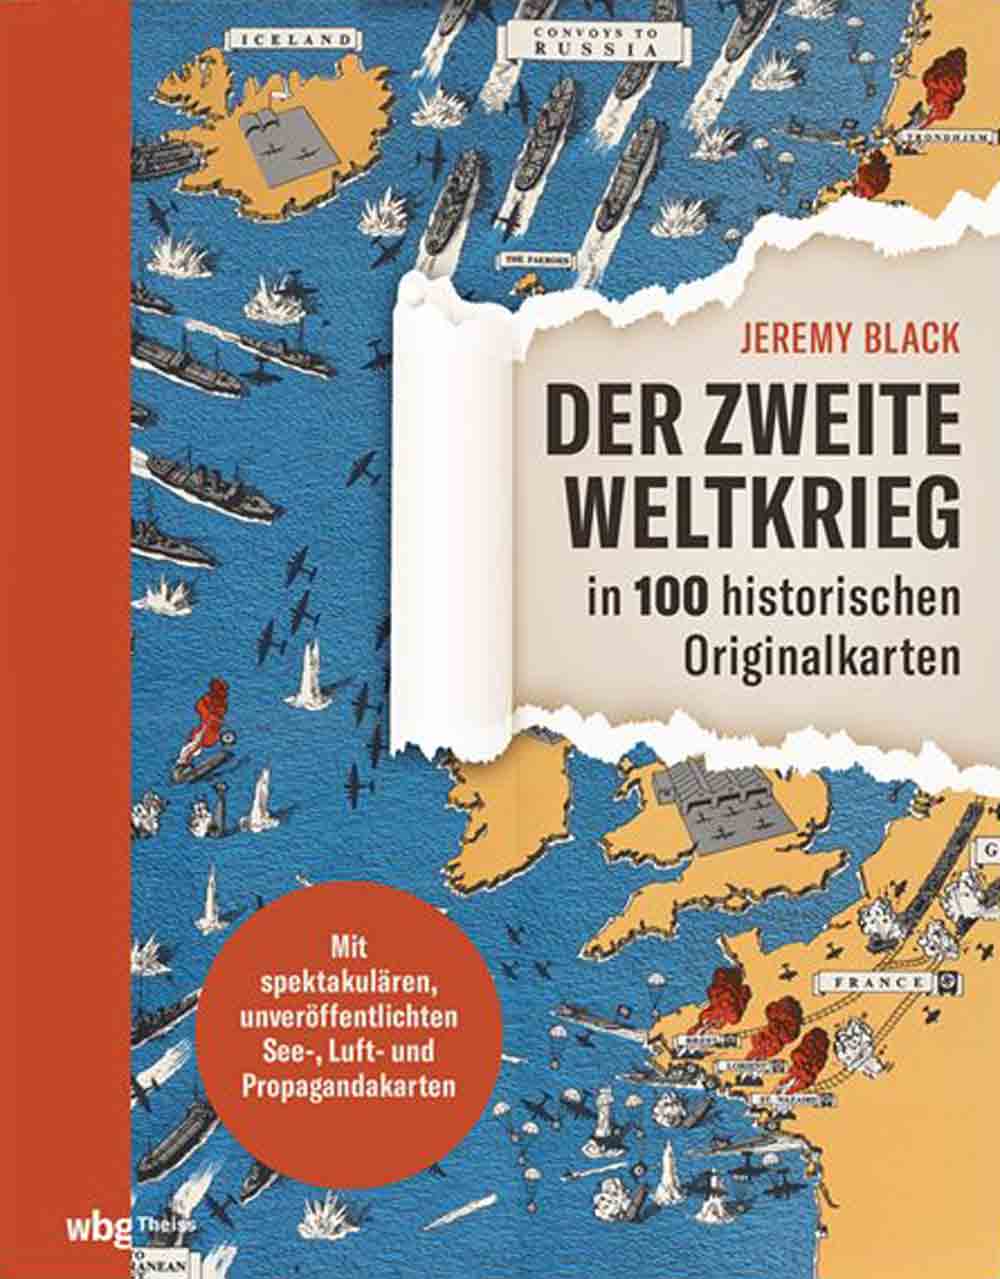 Lesetipps für Gütersloh, Jeremy Black, »Der Zweite Weltkrieg in 100 historischen Originalkarten«